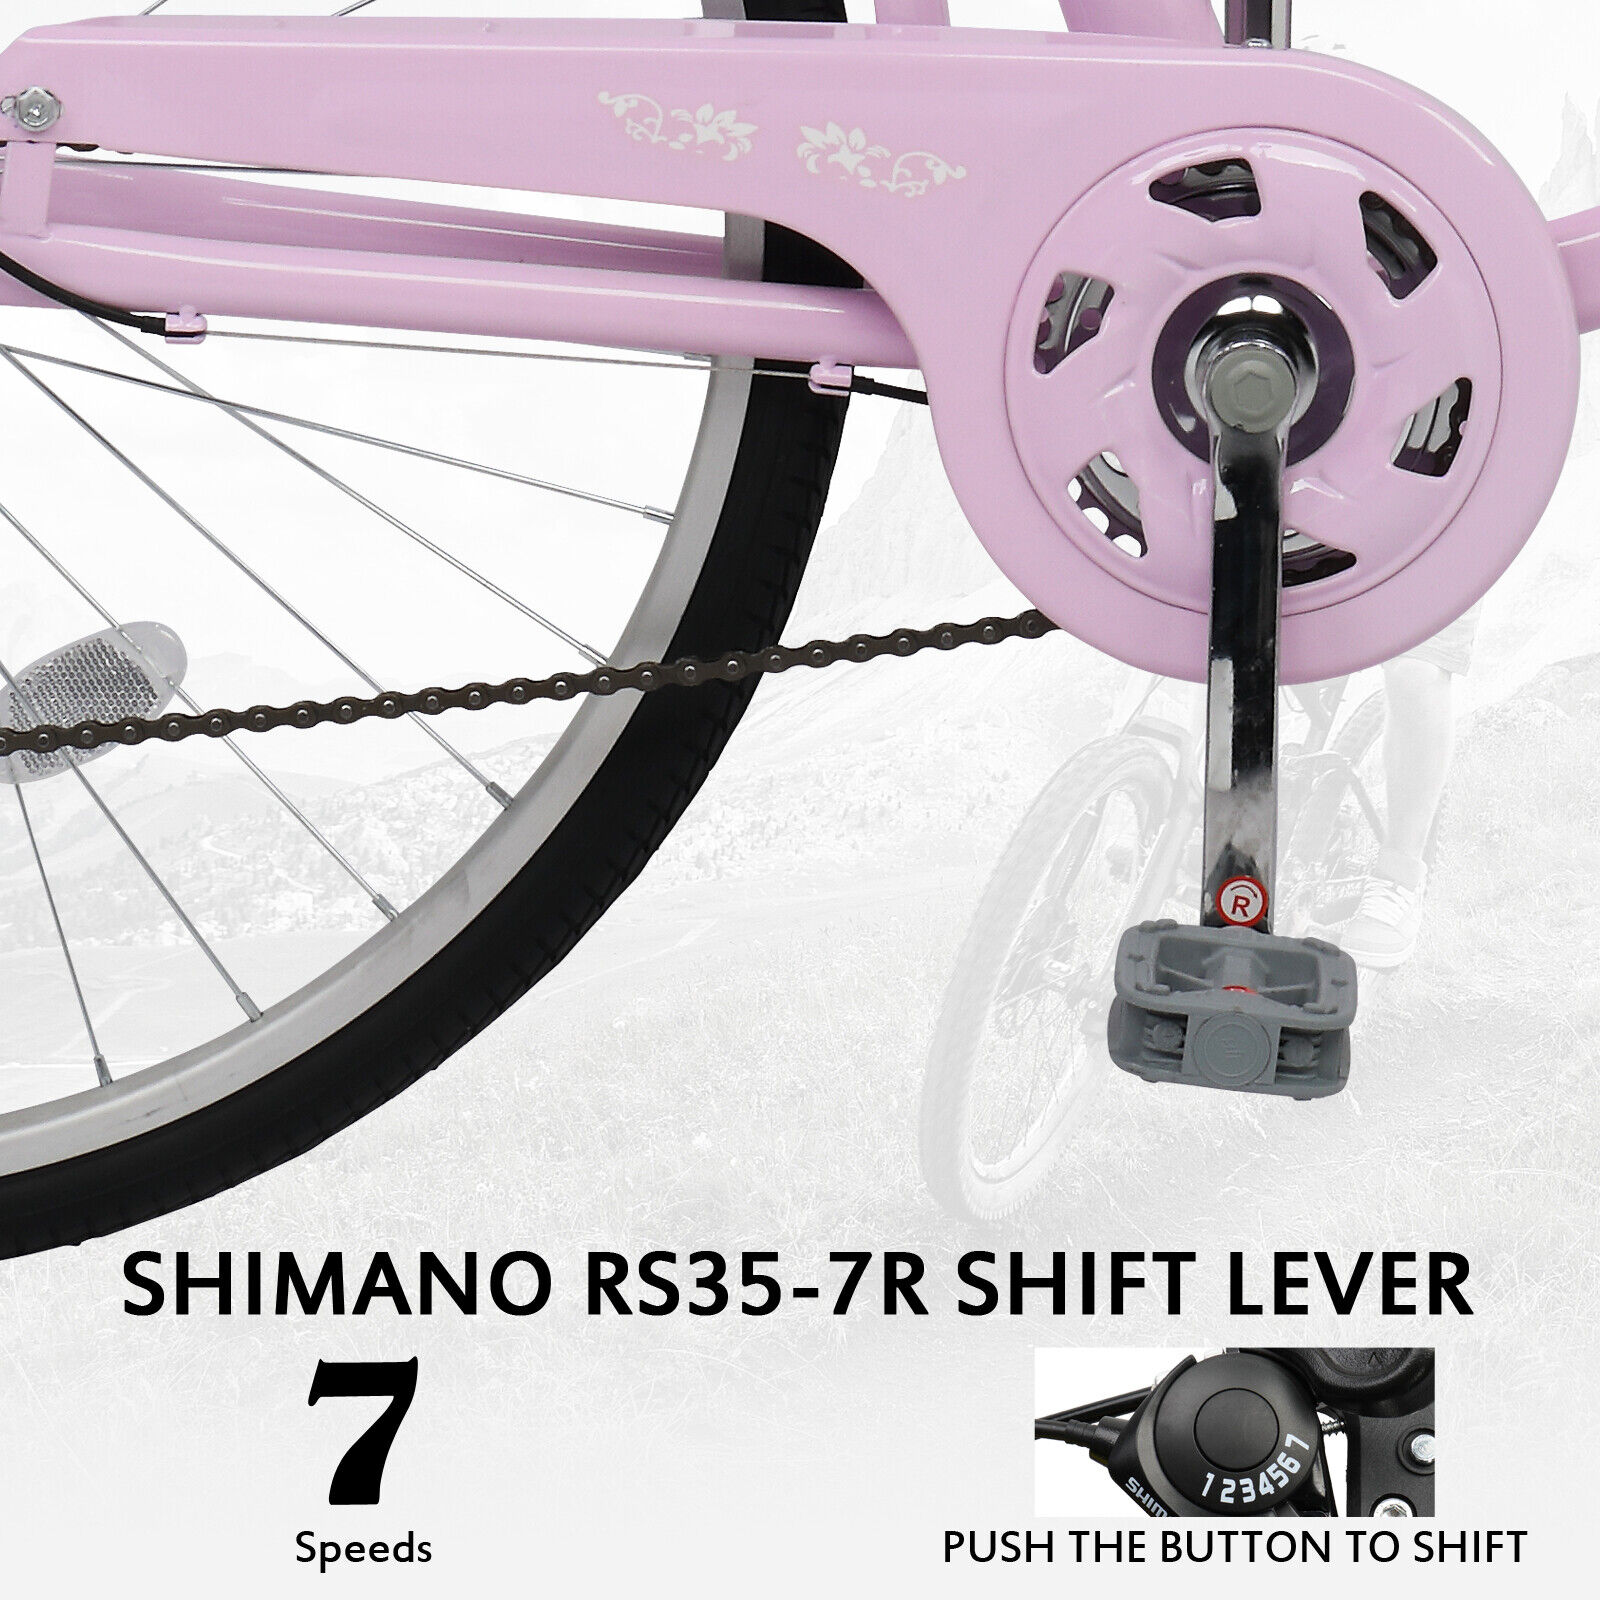 thinkstar Ladies Commuter City Bike Shimano 7 Speeds Cruiser Bicycle For Girl Women